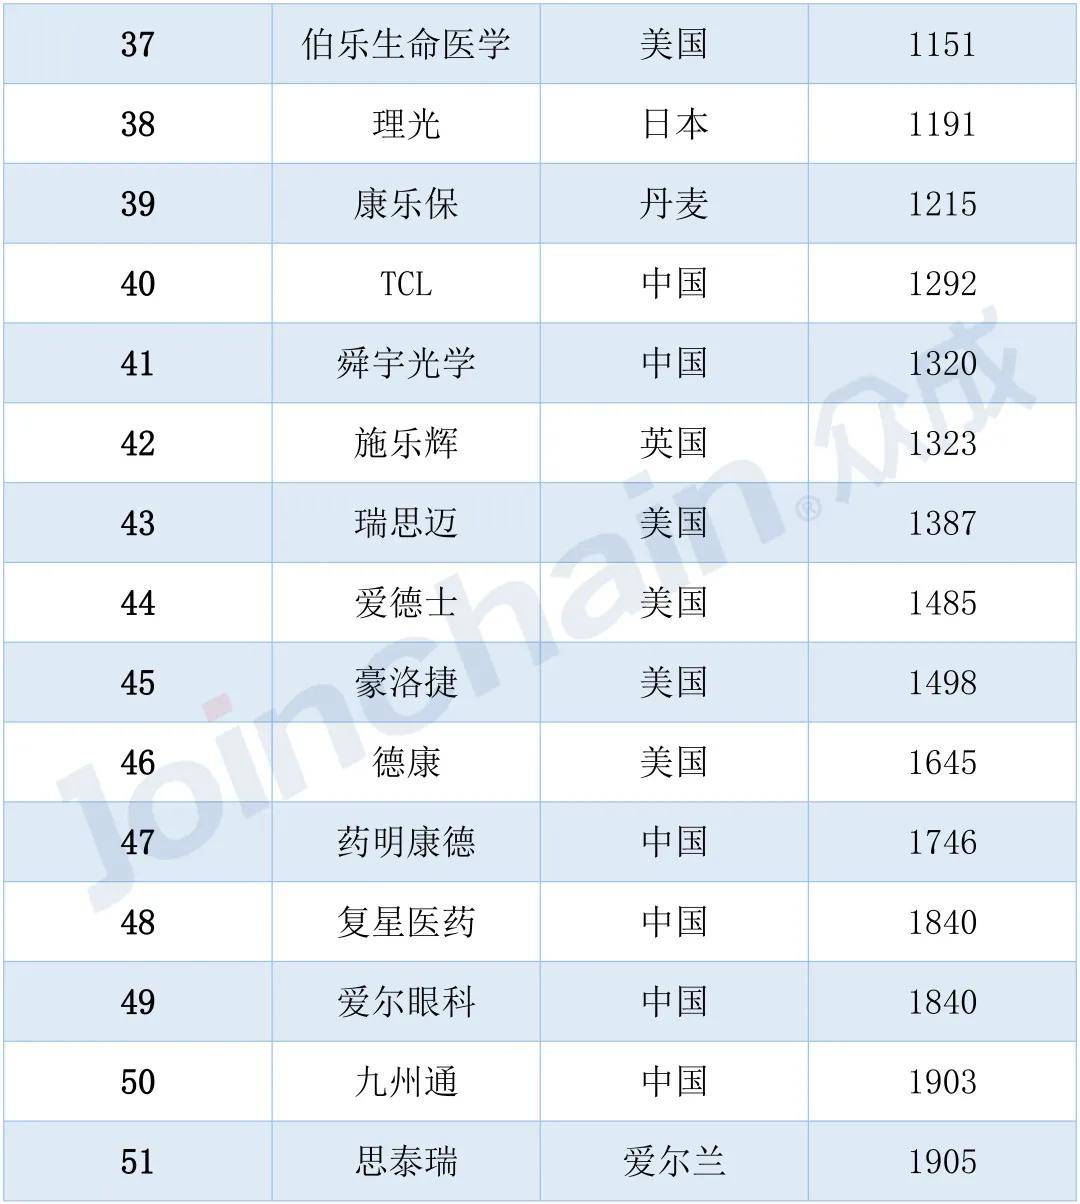 2pg电子022年医疗器械企业百强榜单发布国产医械龙头加速追击
